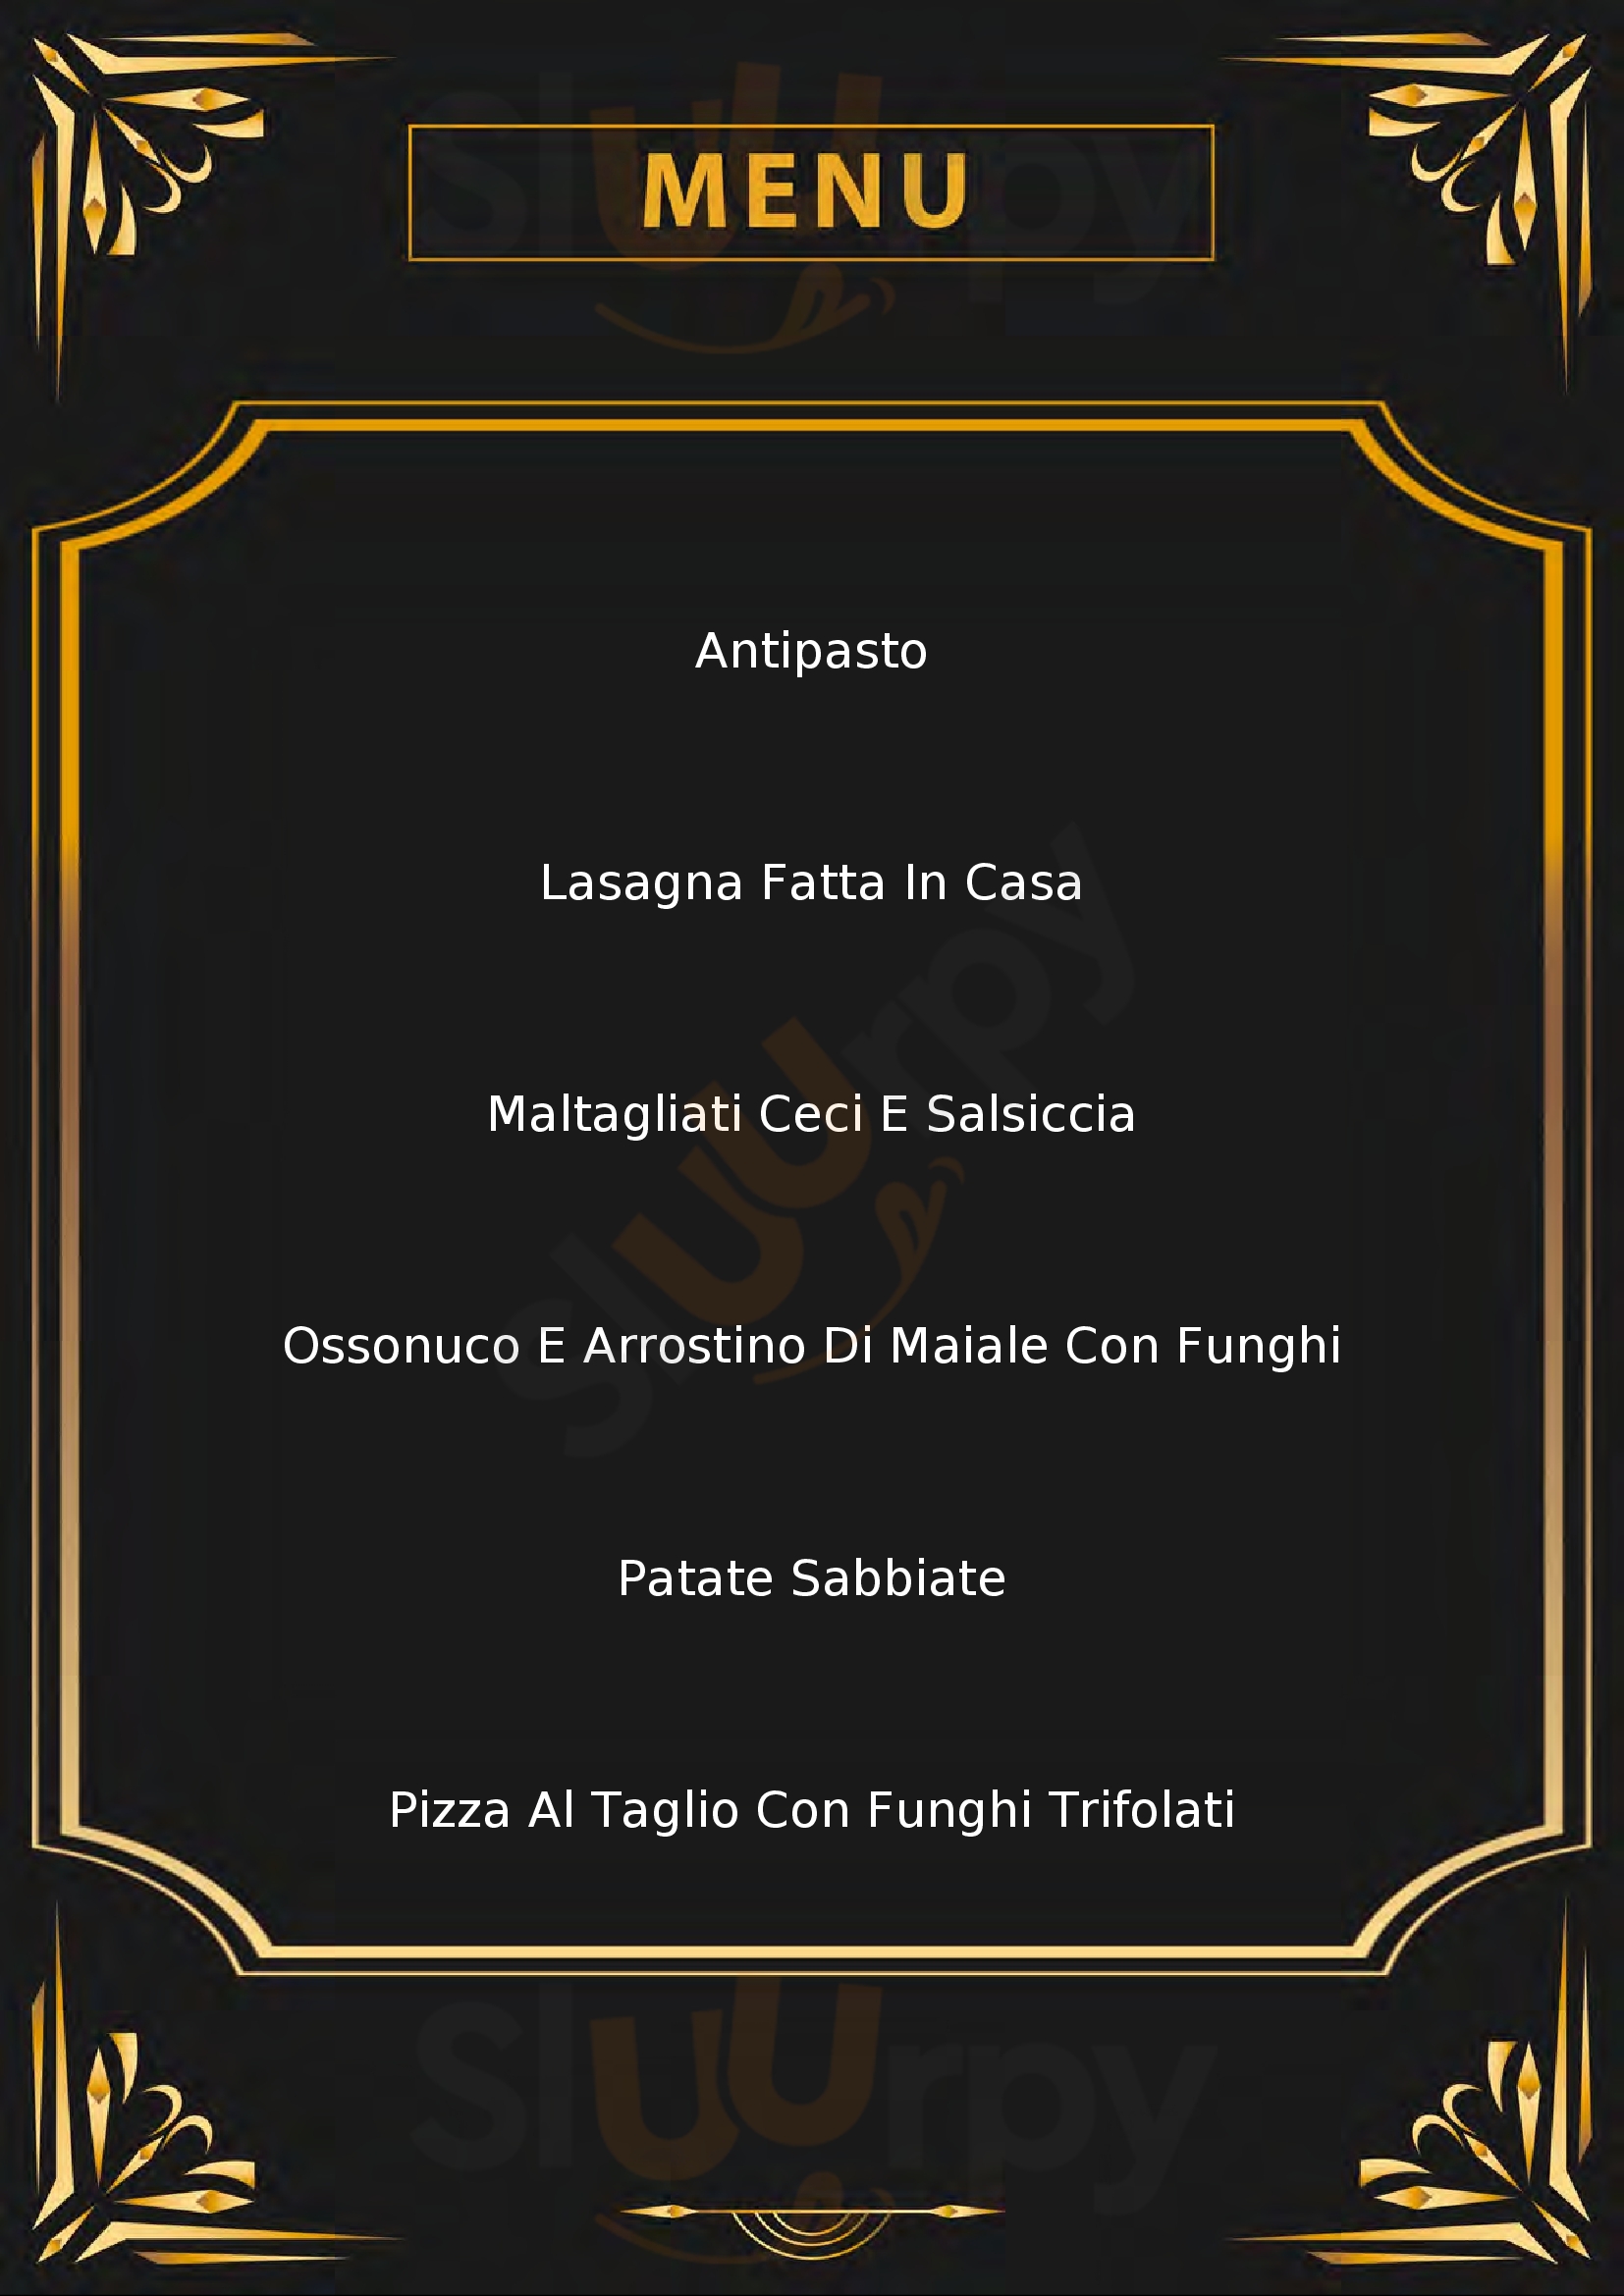 Ristorante Pizzeria dall'Amico Montecalvo in Foglia menù 1 pagina